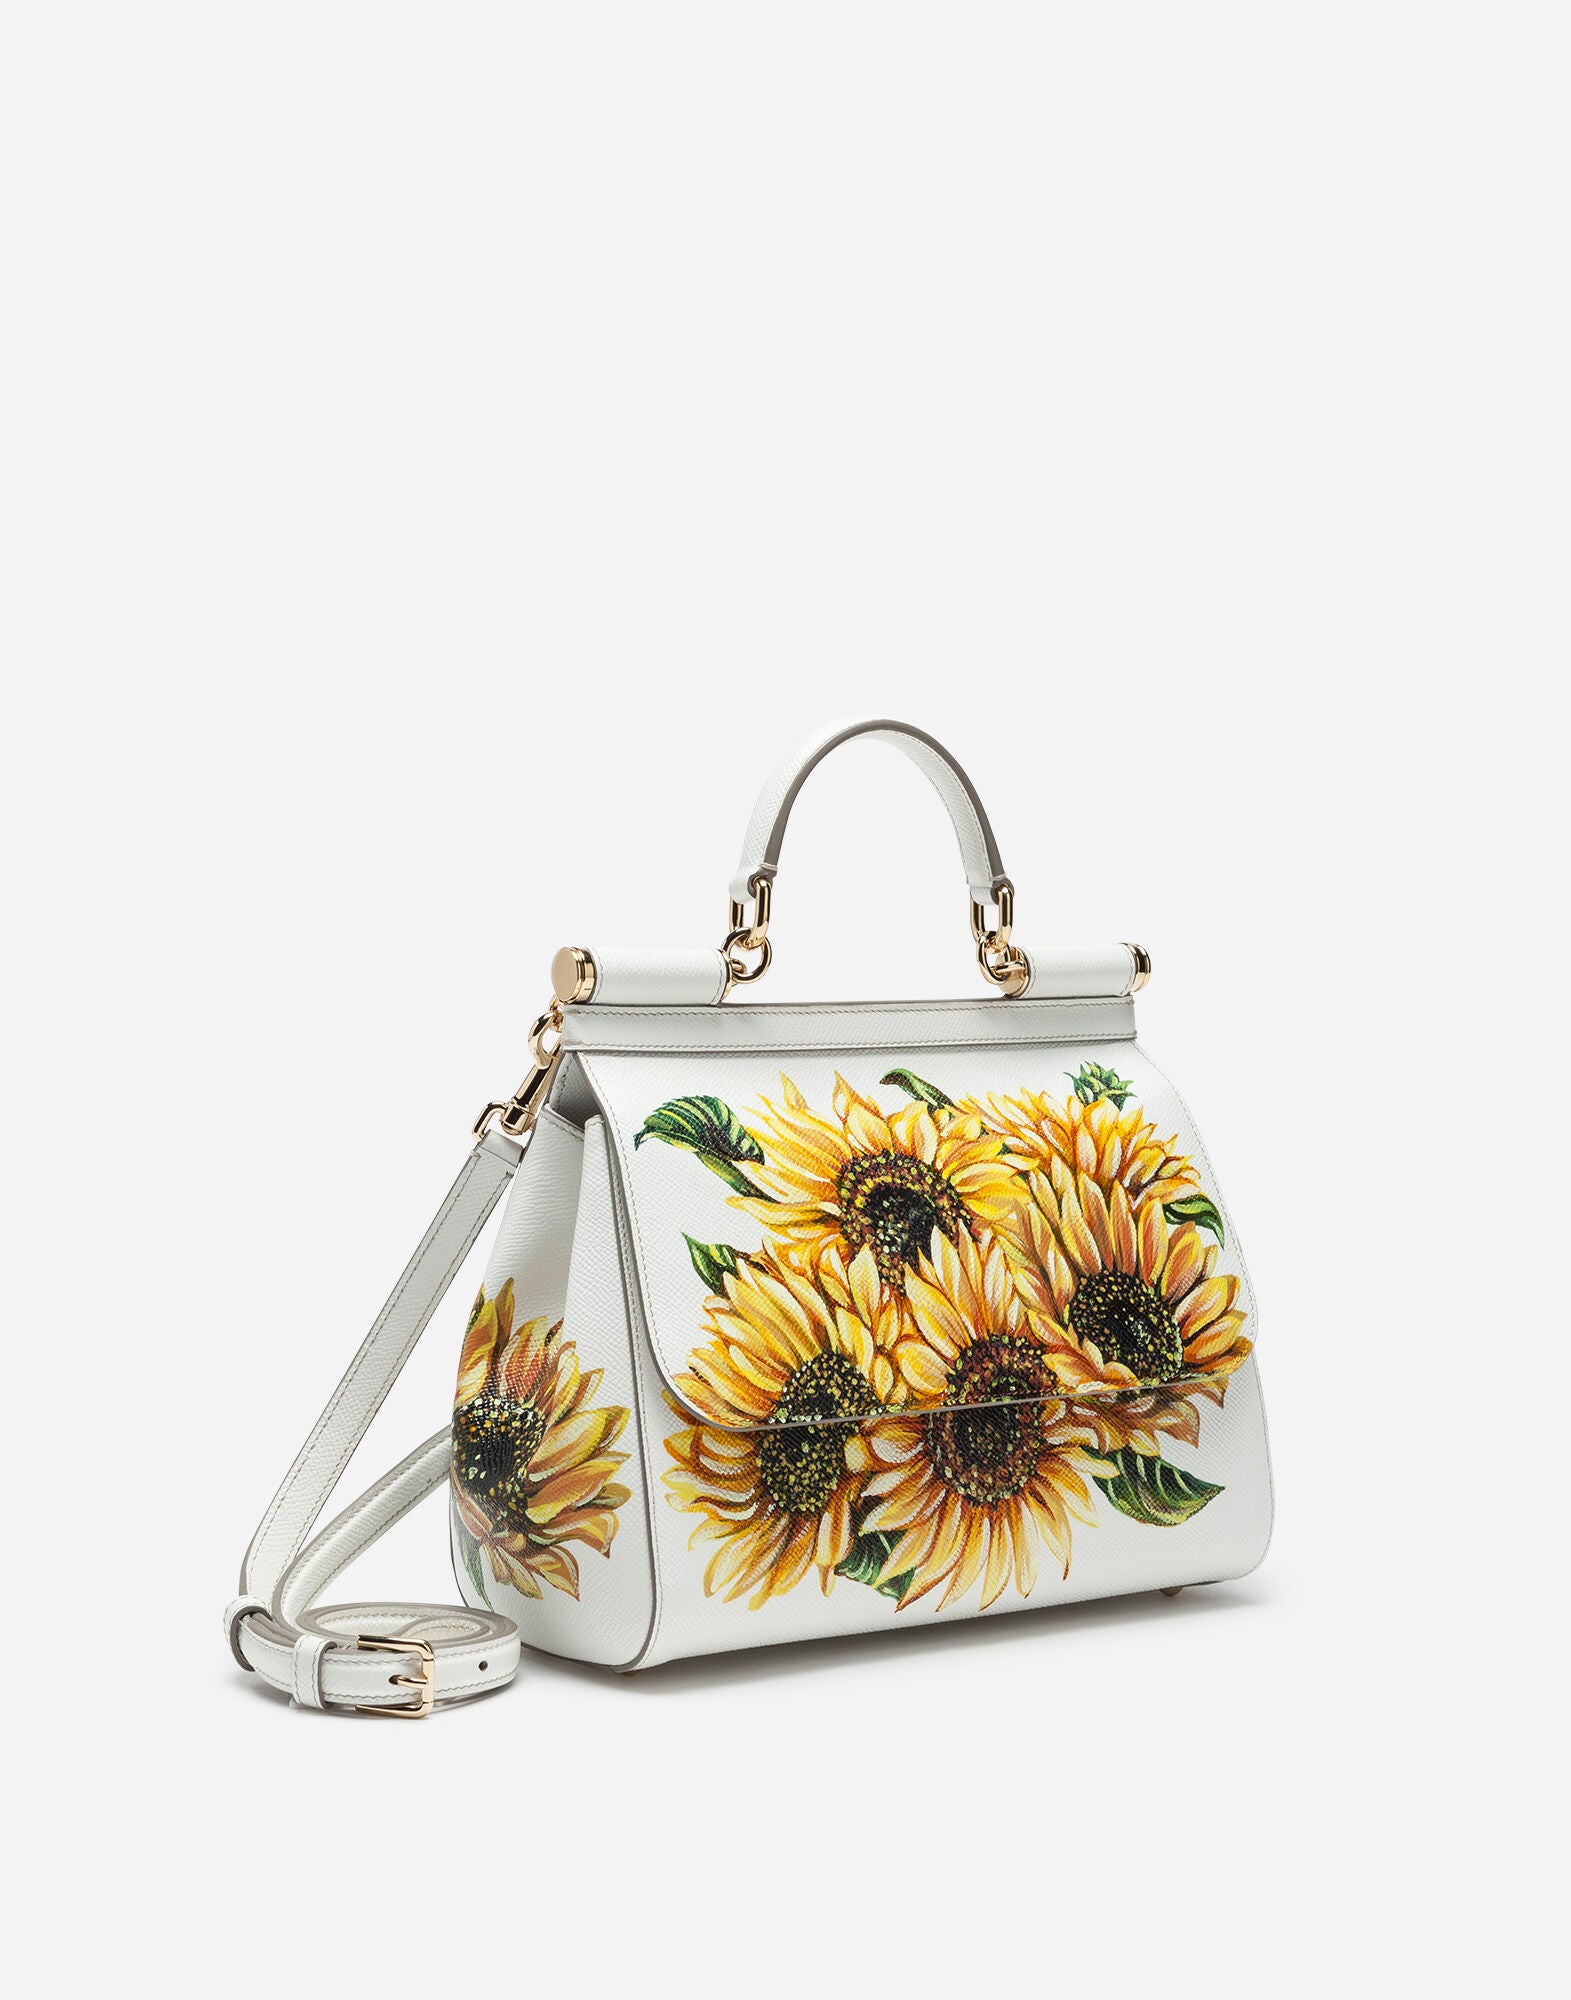 Bag In Sunflower